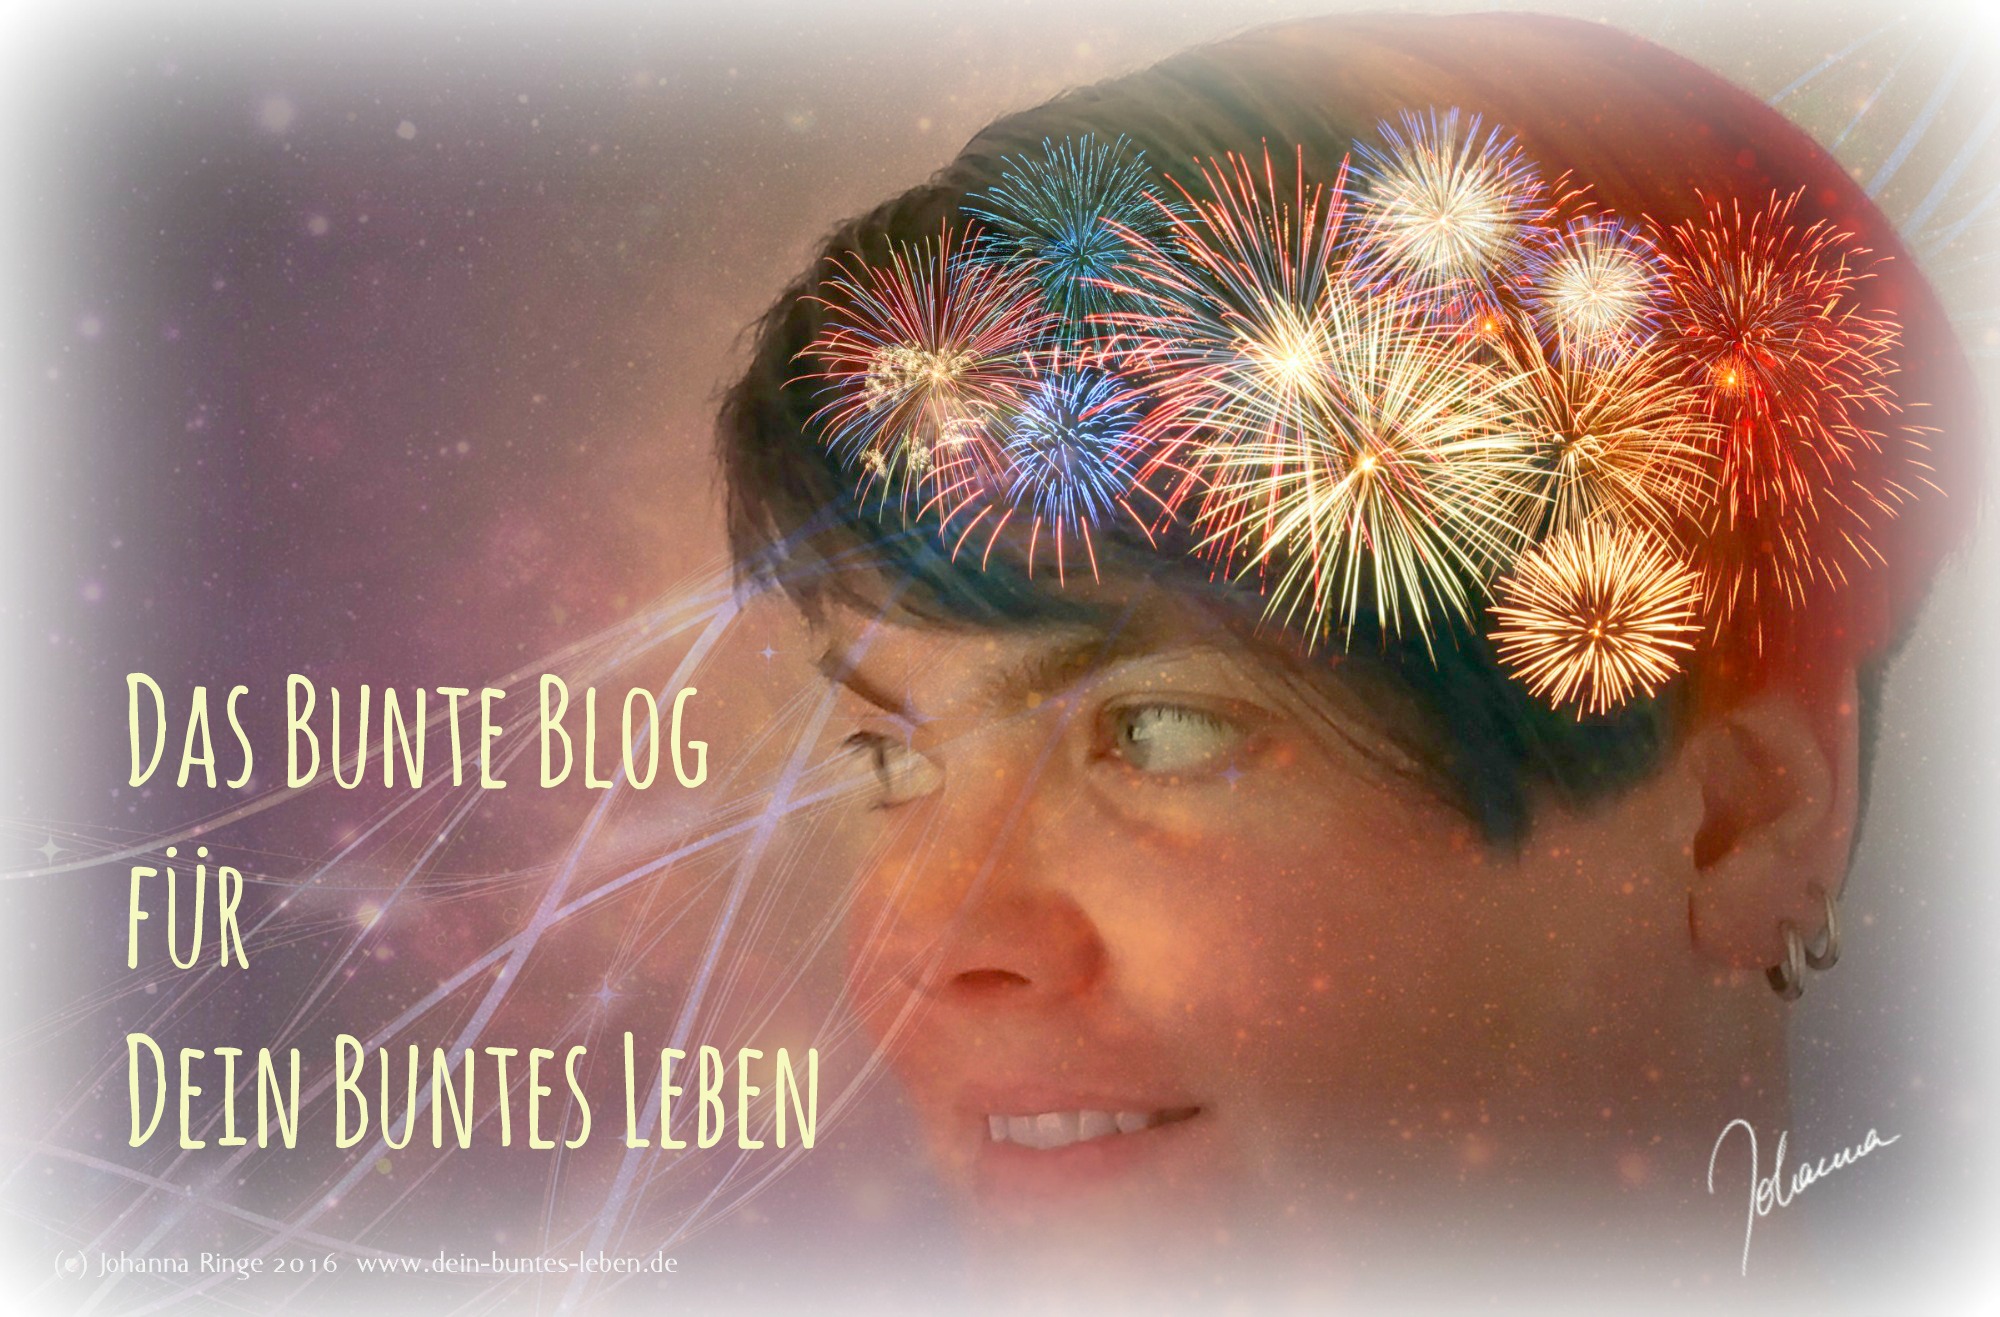 Das bunte Blog für Dein buntes Leben (c) Johanna Ringe 2015ff http://www.dein-buntes-leben.de